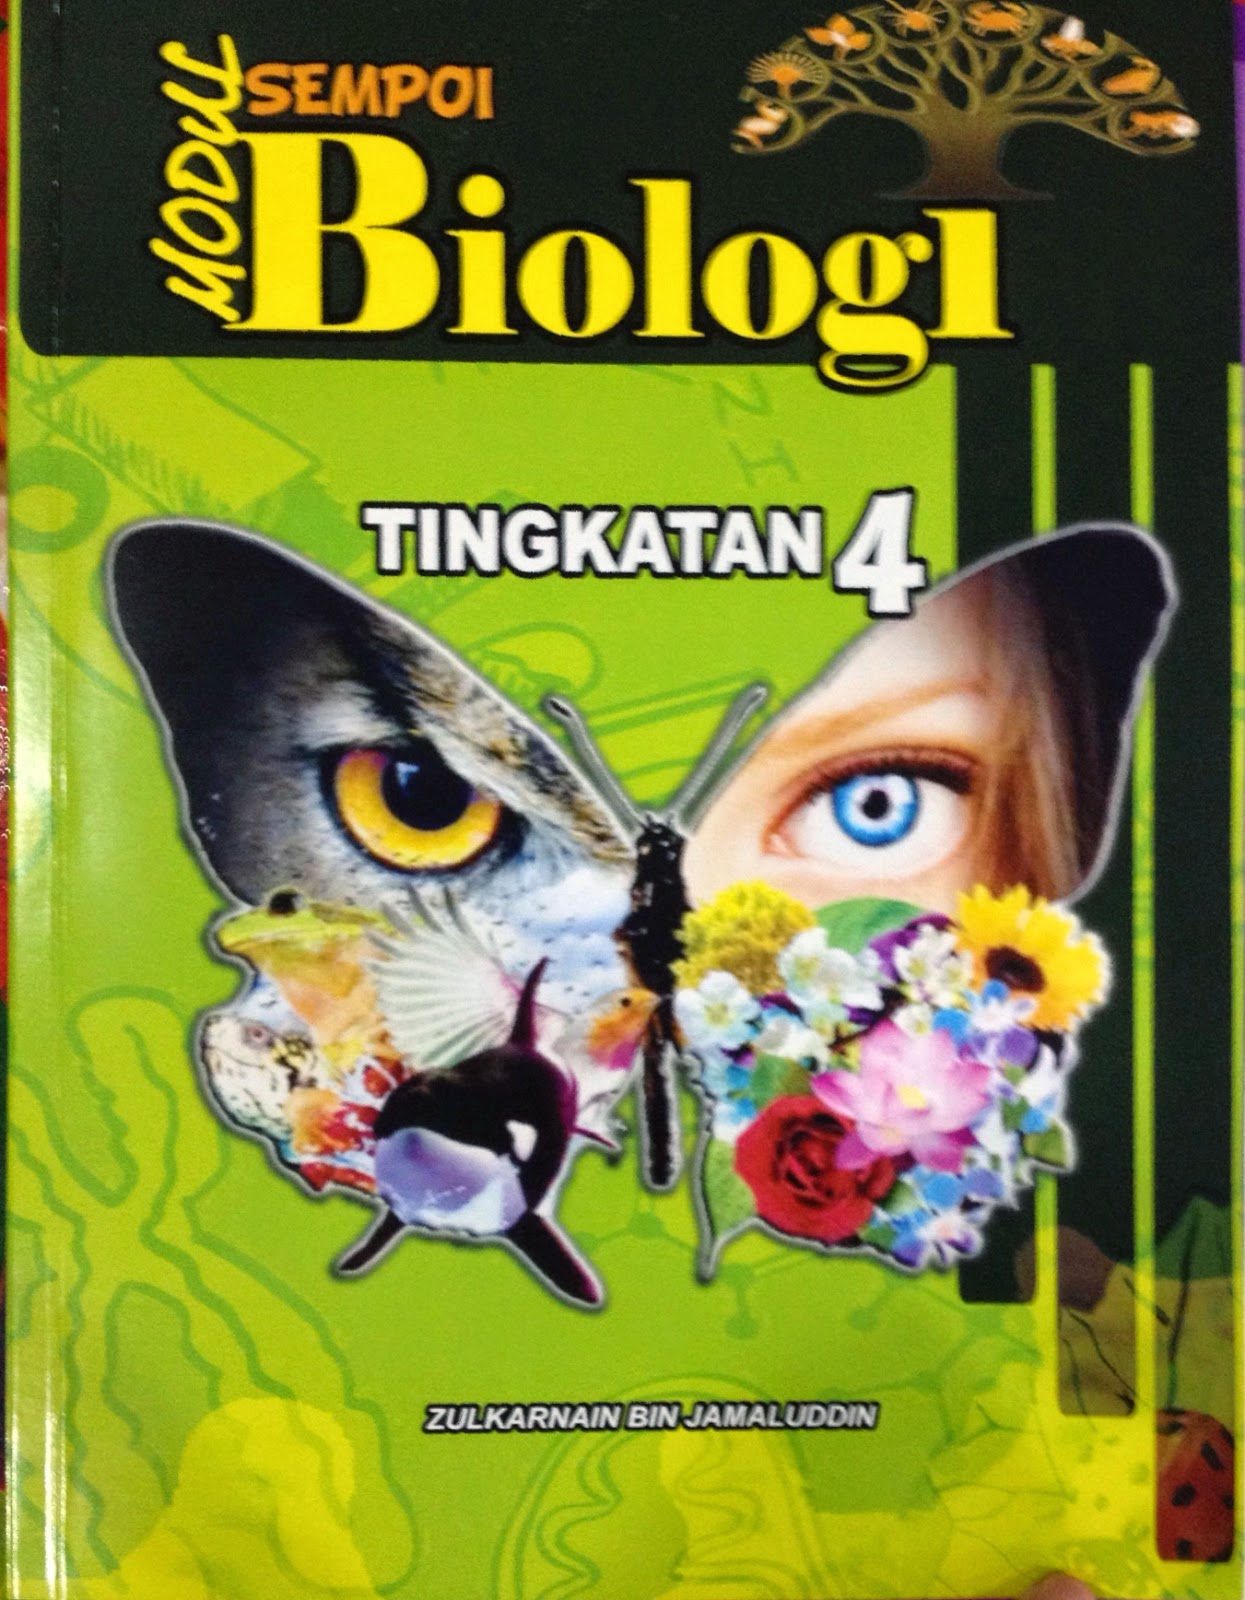 Biology A+: Kulit depan Modul Biologi